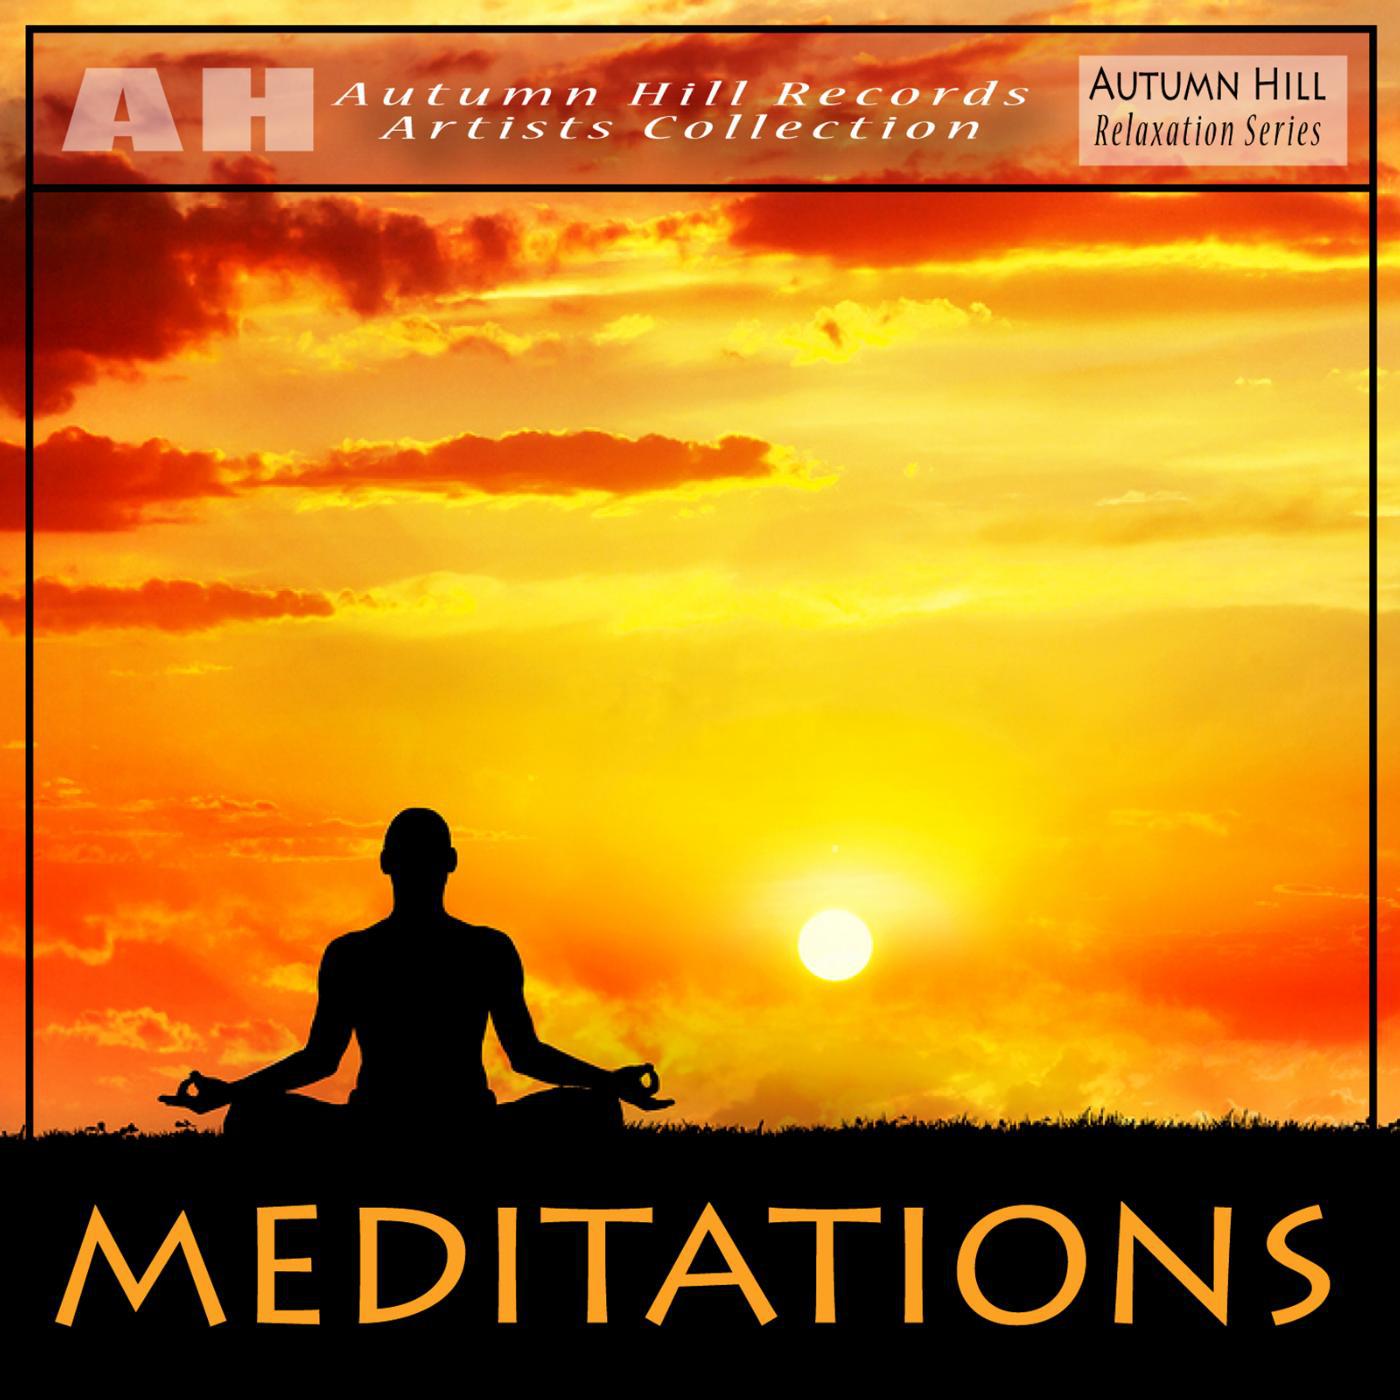 Добавь в плейлист медитация. Blues to Relax (Meditation) обложки альбомов. Медитация слушать. Meditative album. Special Mind Relaxation!.